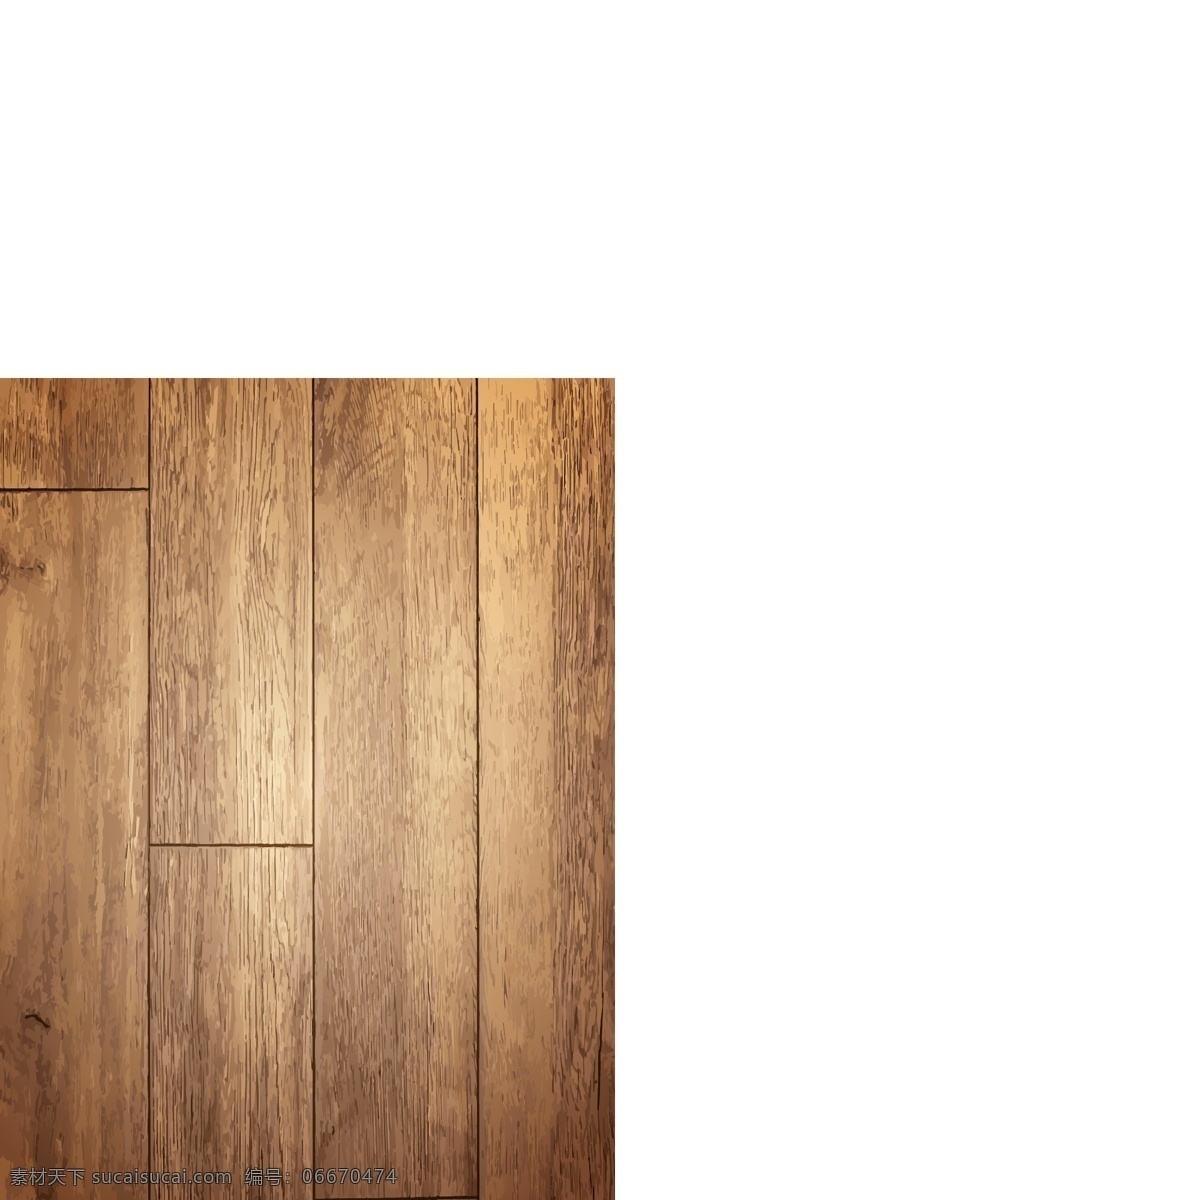 木纹 高清 矢量 高端 木地板 背景 地板 产品放置 高端木材 广告背景 木背景